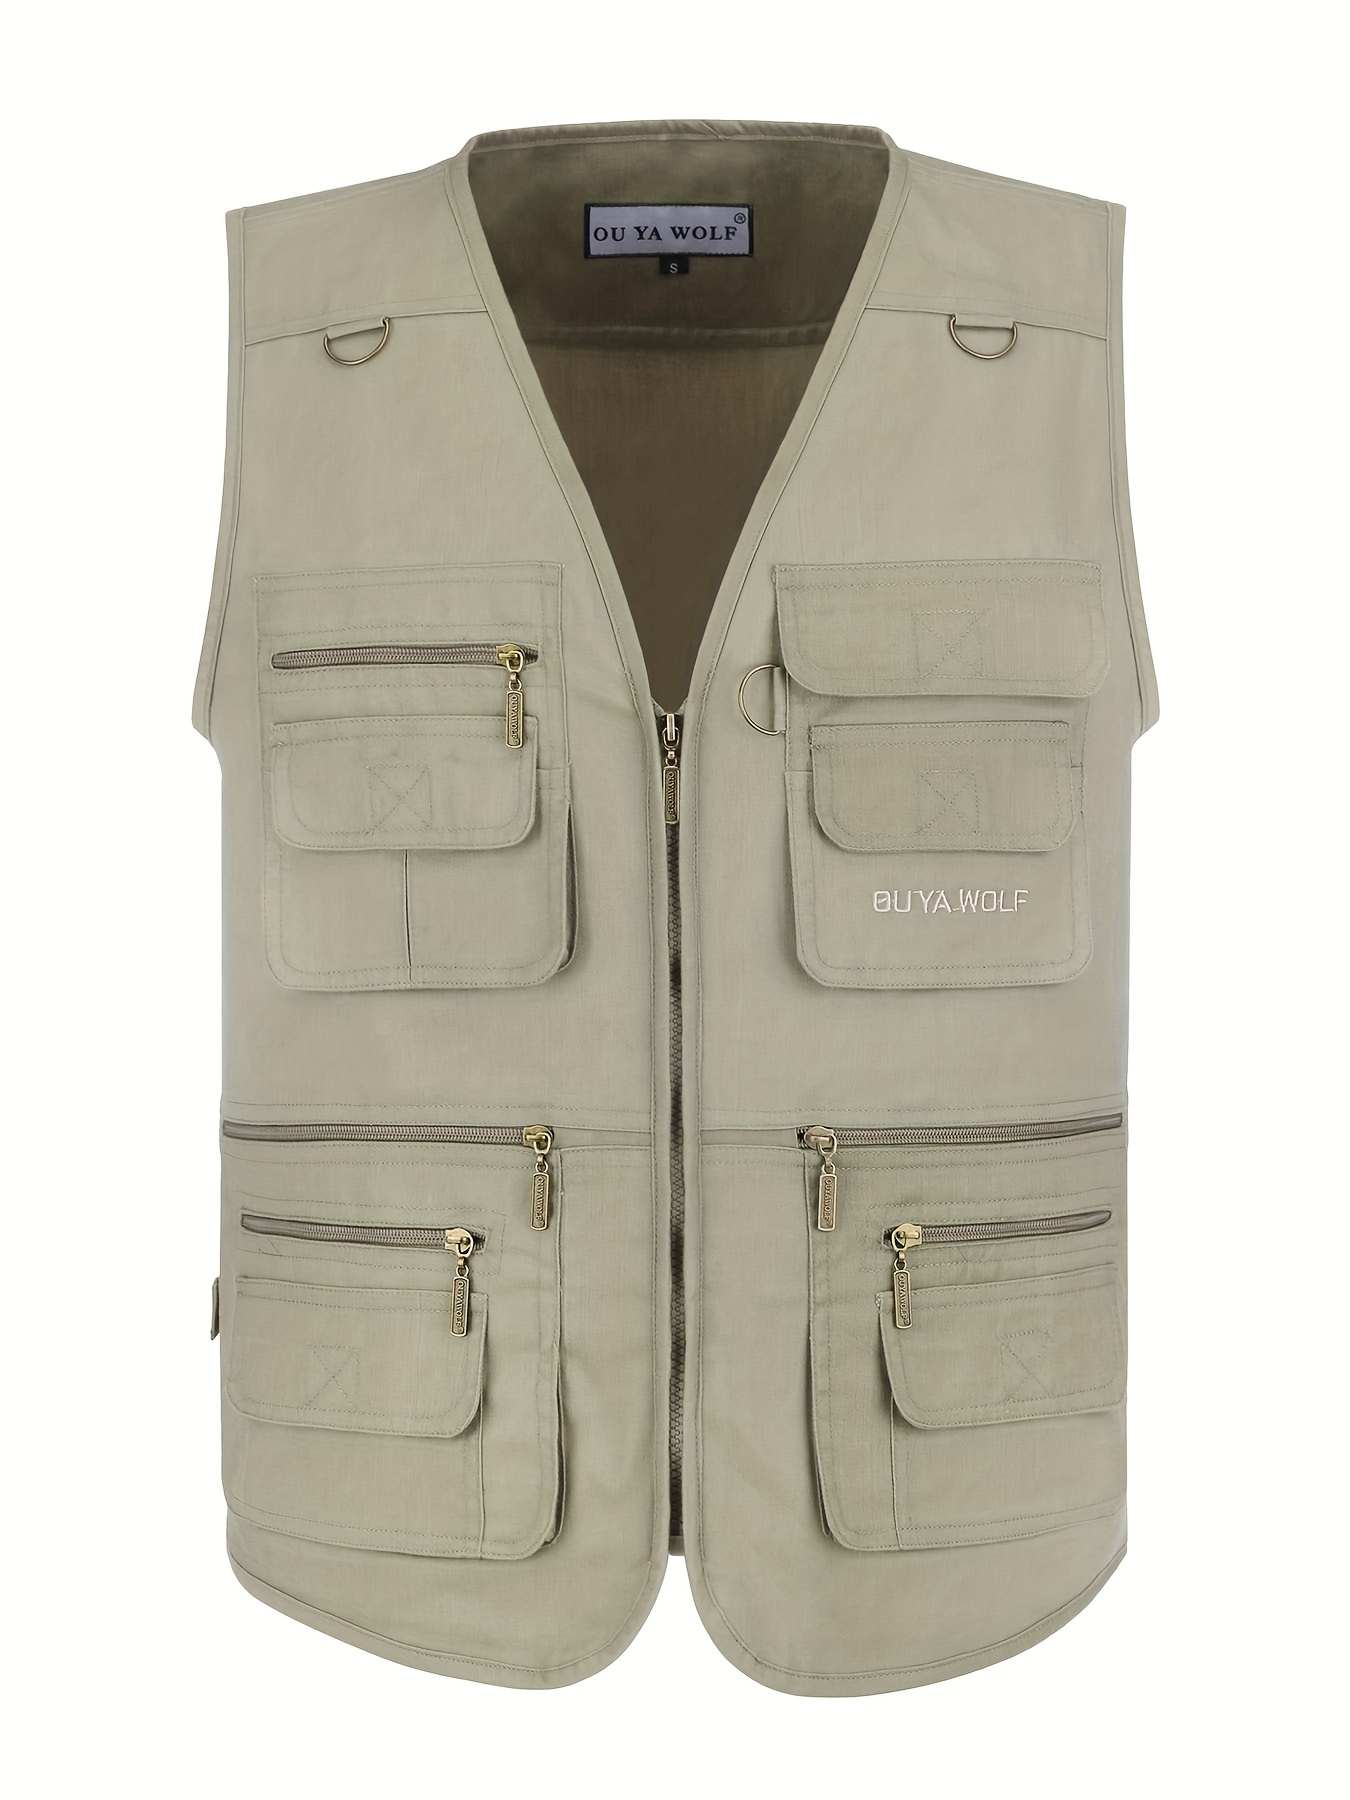 Nylon Fishing Vest Outdoors Sleeveless Jacket Vintage Camping Vest